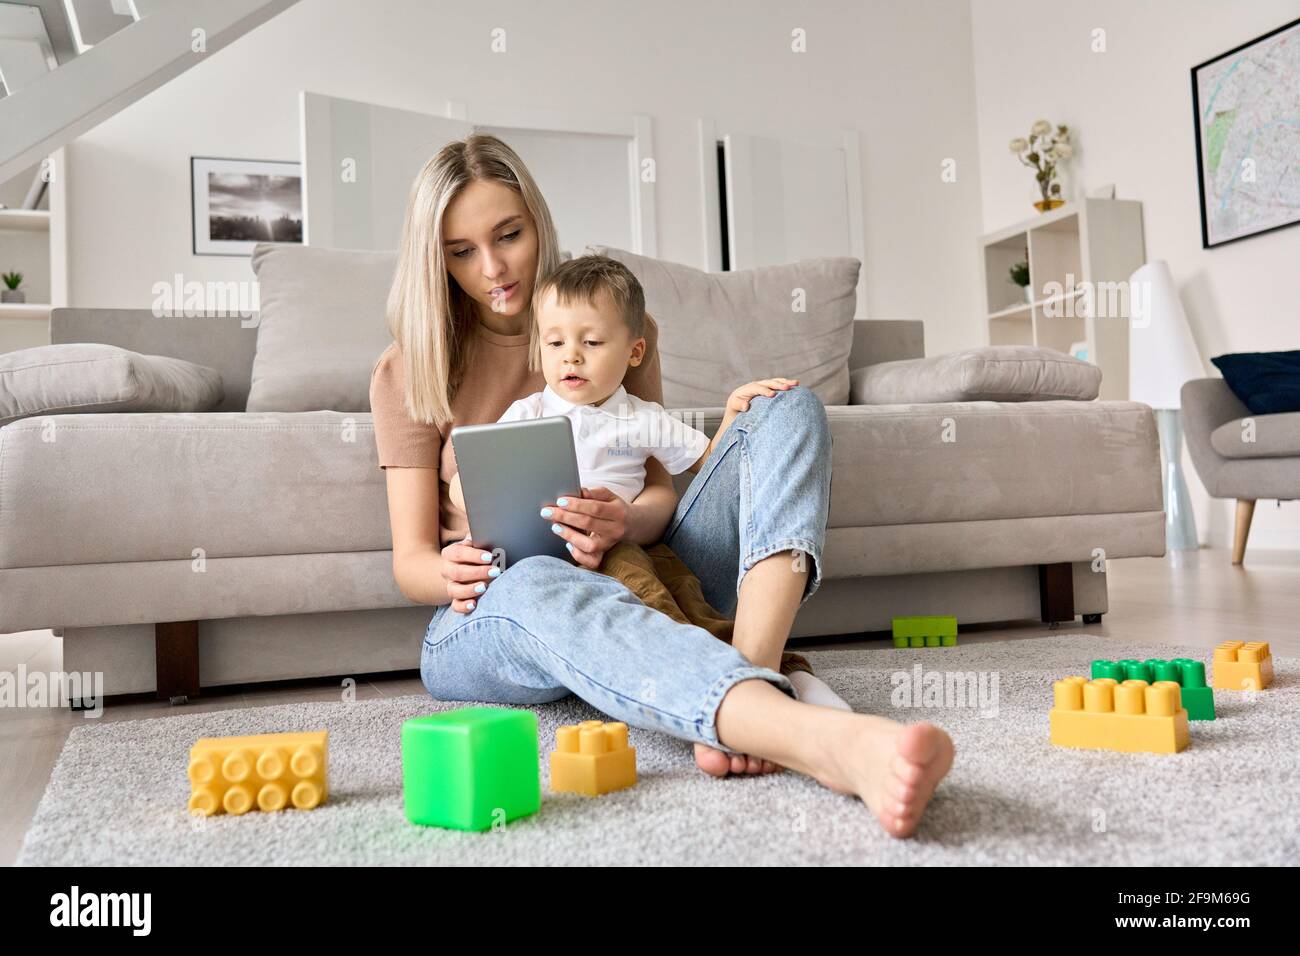 Junge Mutter, die zu Hause auf dem Boden sitzt, während das Kind Filme auf dem Tablet ansieht. Stockfoto